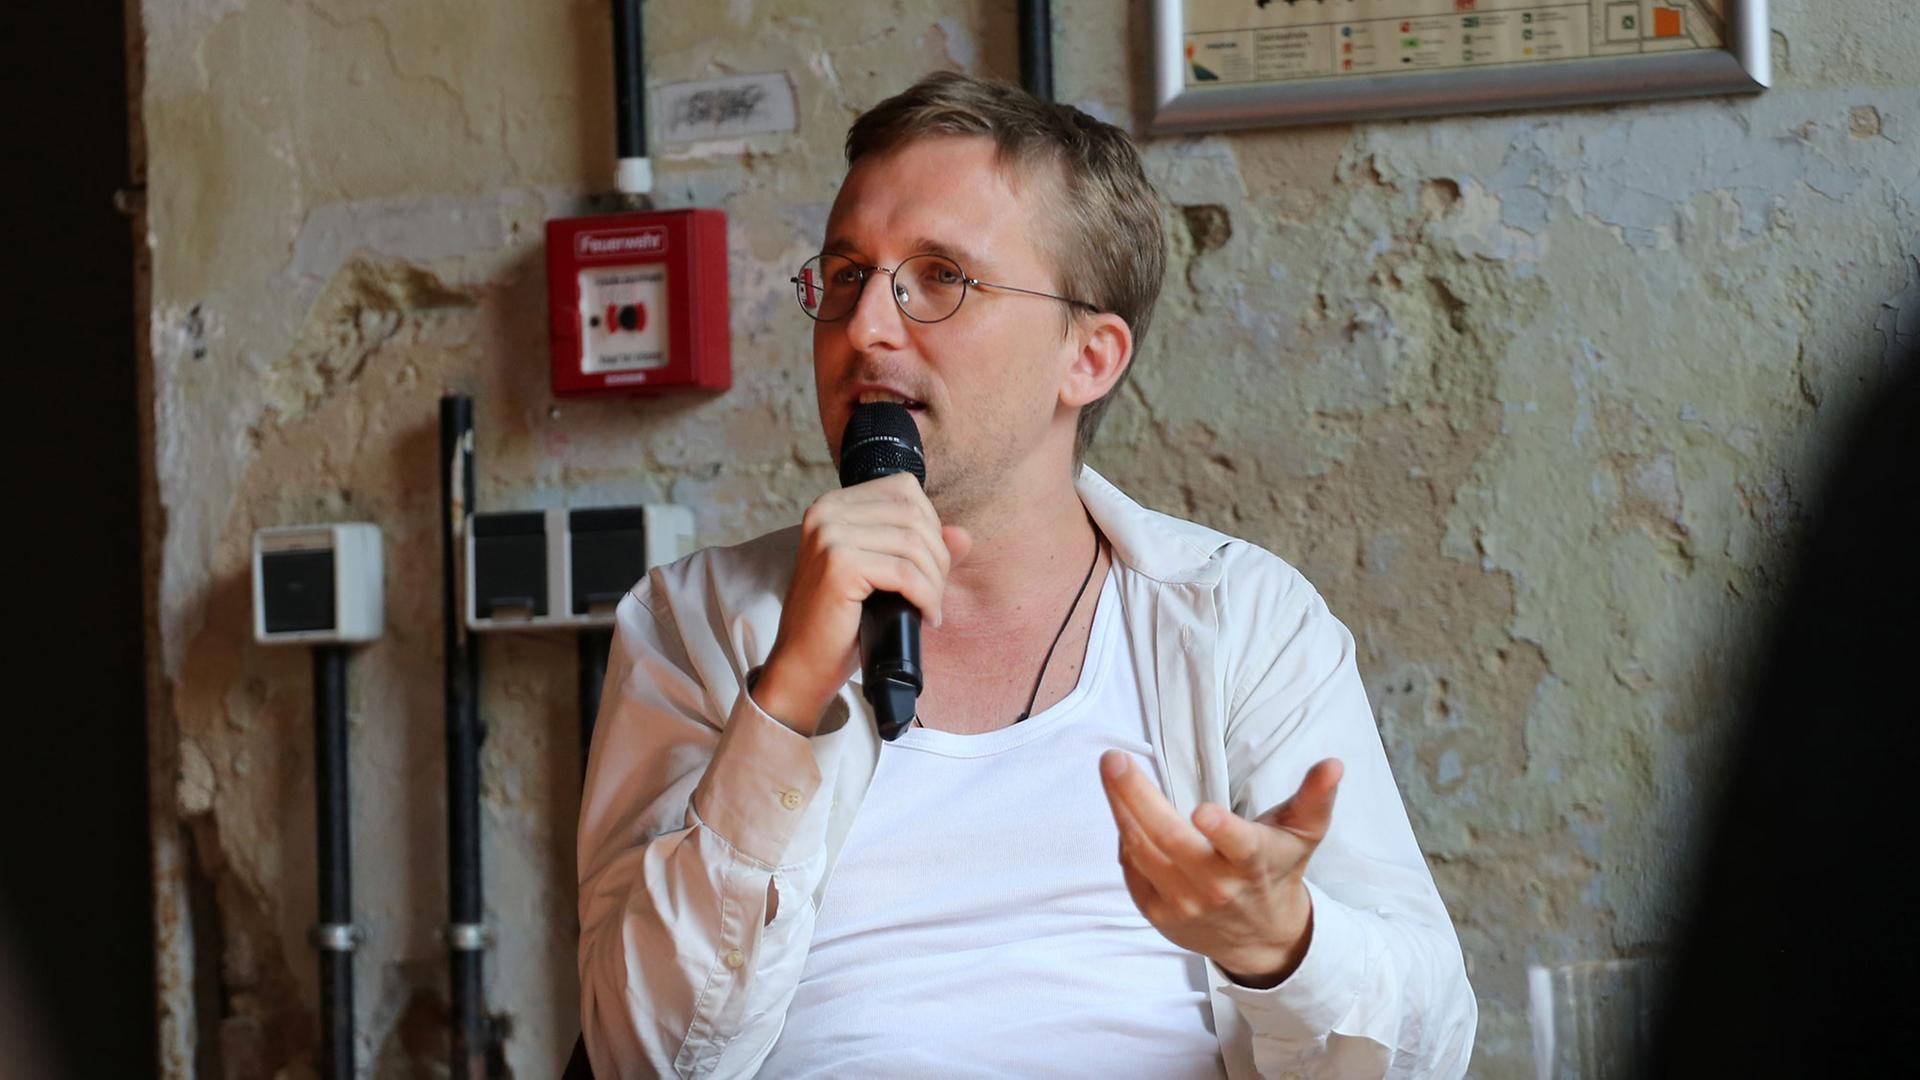 Der Regisseur Boris Nikitin spricht am 06.08.2014 in der Gebläsehalle in Duisburg während der Auftaktpressekonferenz der Ruhrtriennale 2014.